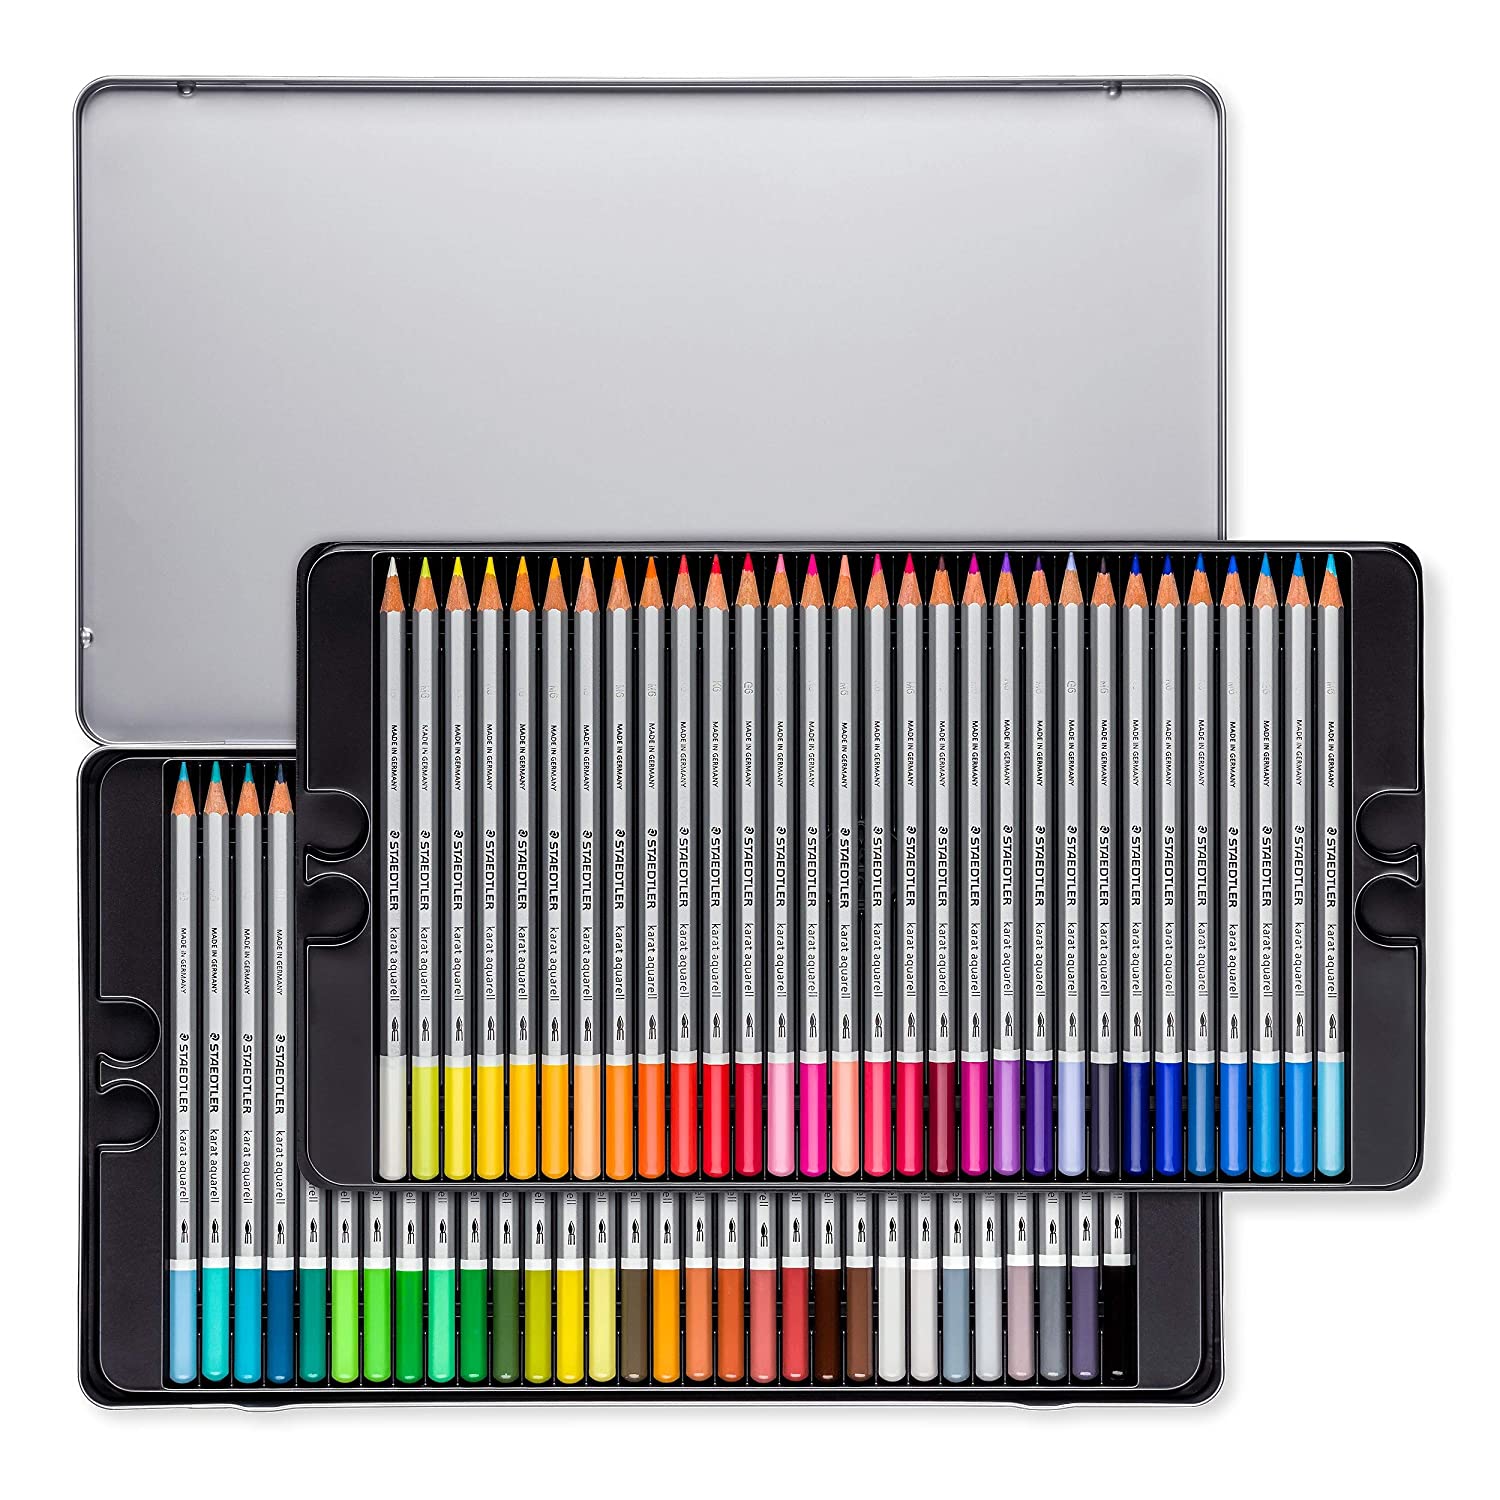 Staedtler Karat Aquarell Premium Watercolor Pencils, Set of 60 Colors (125M60)